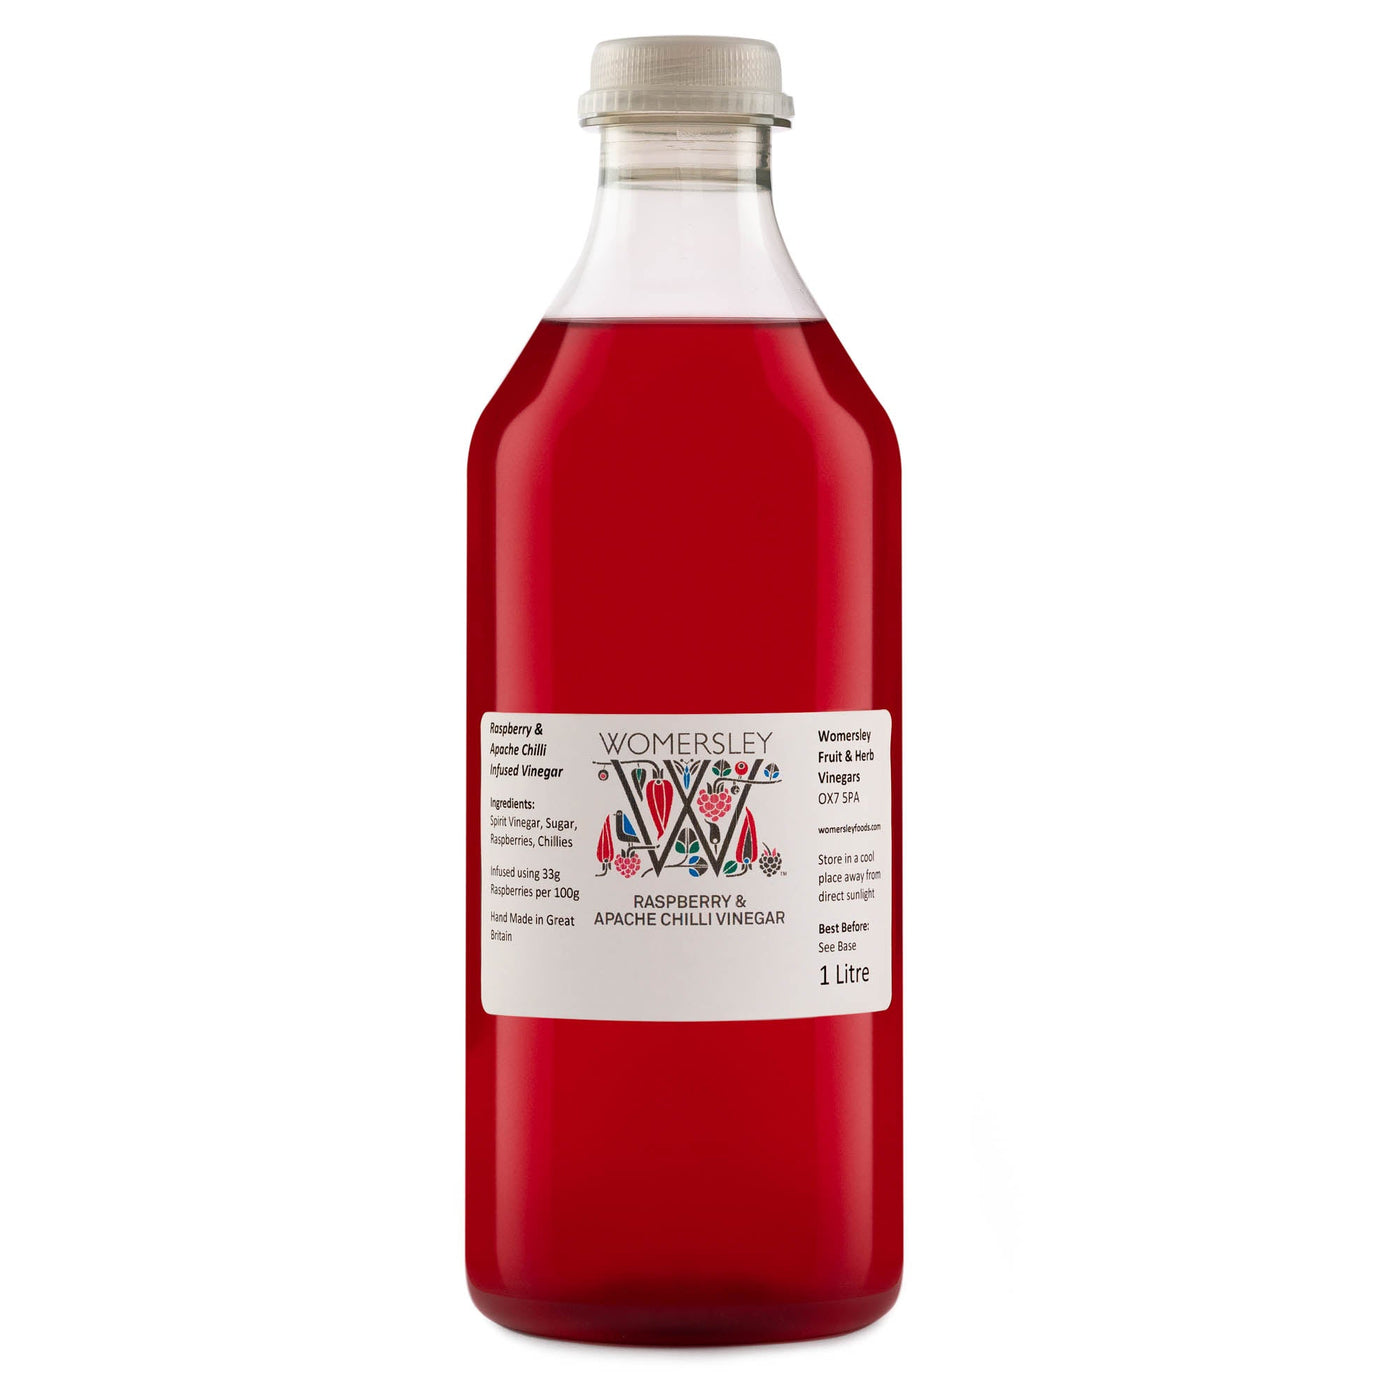 Raspberry & Apache Chilli Vinegar